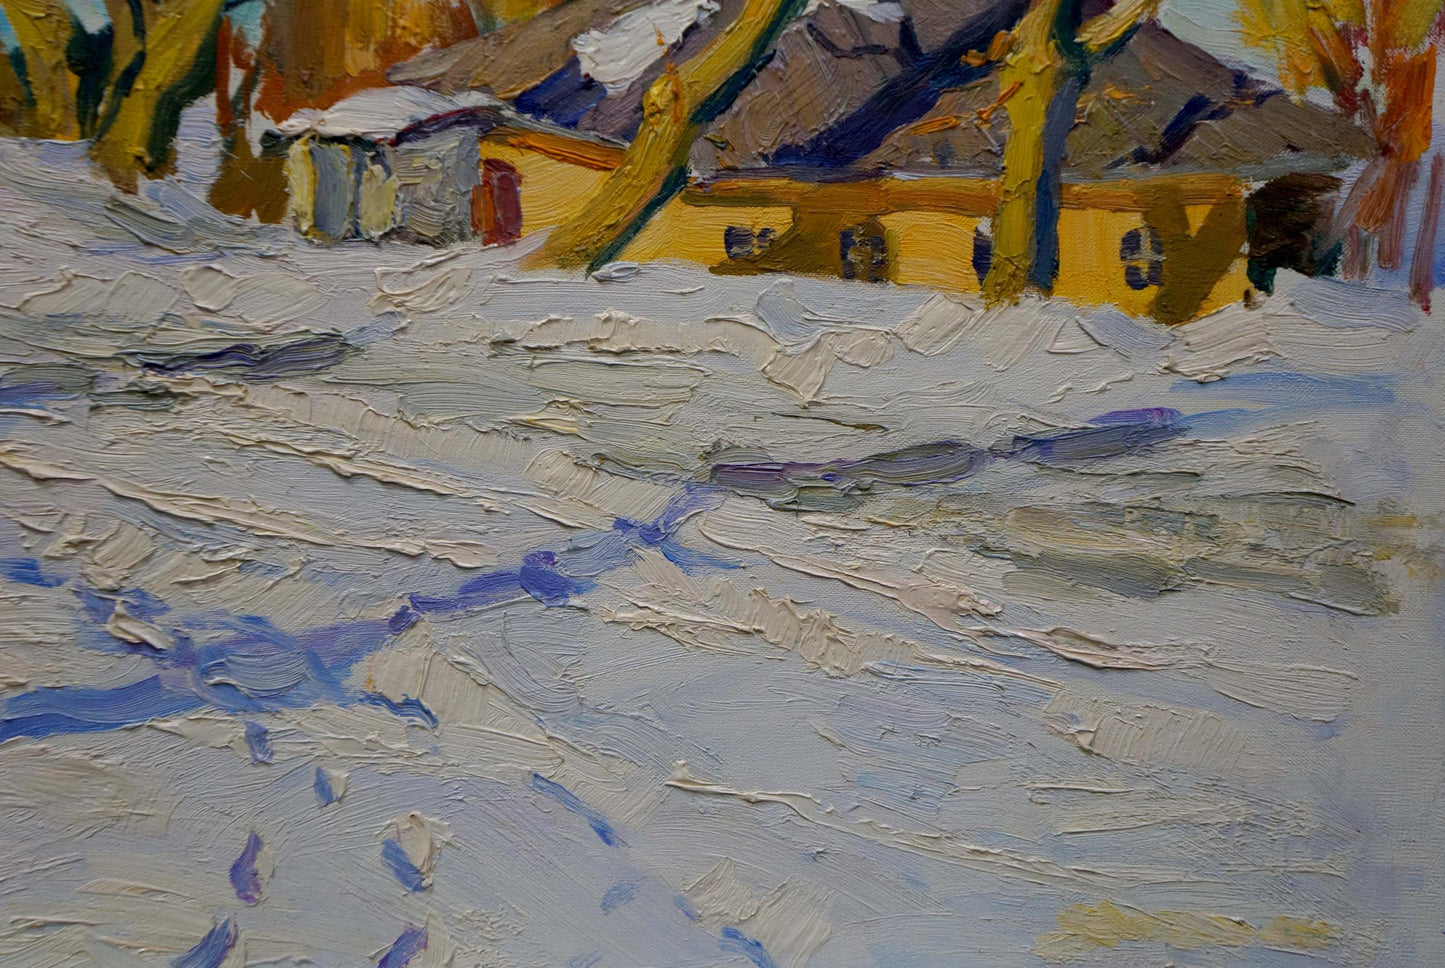 Oil painting Winter landscape Sulimenko Petr Stepanovich